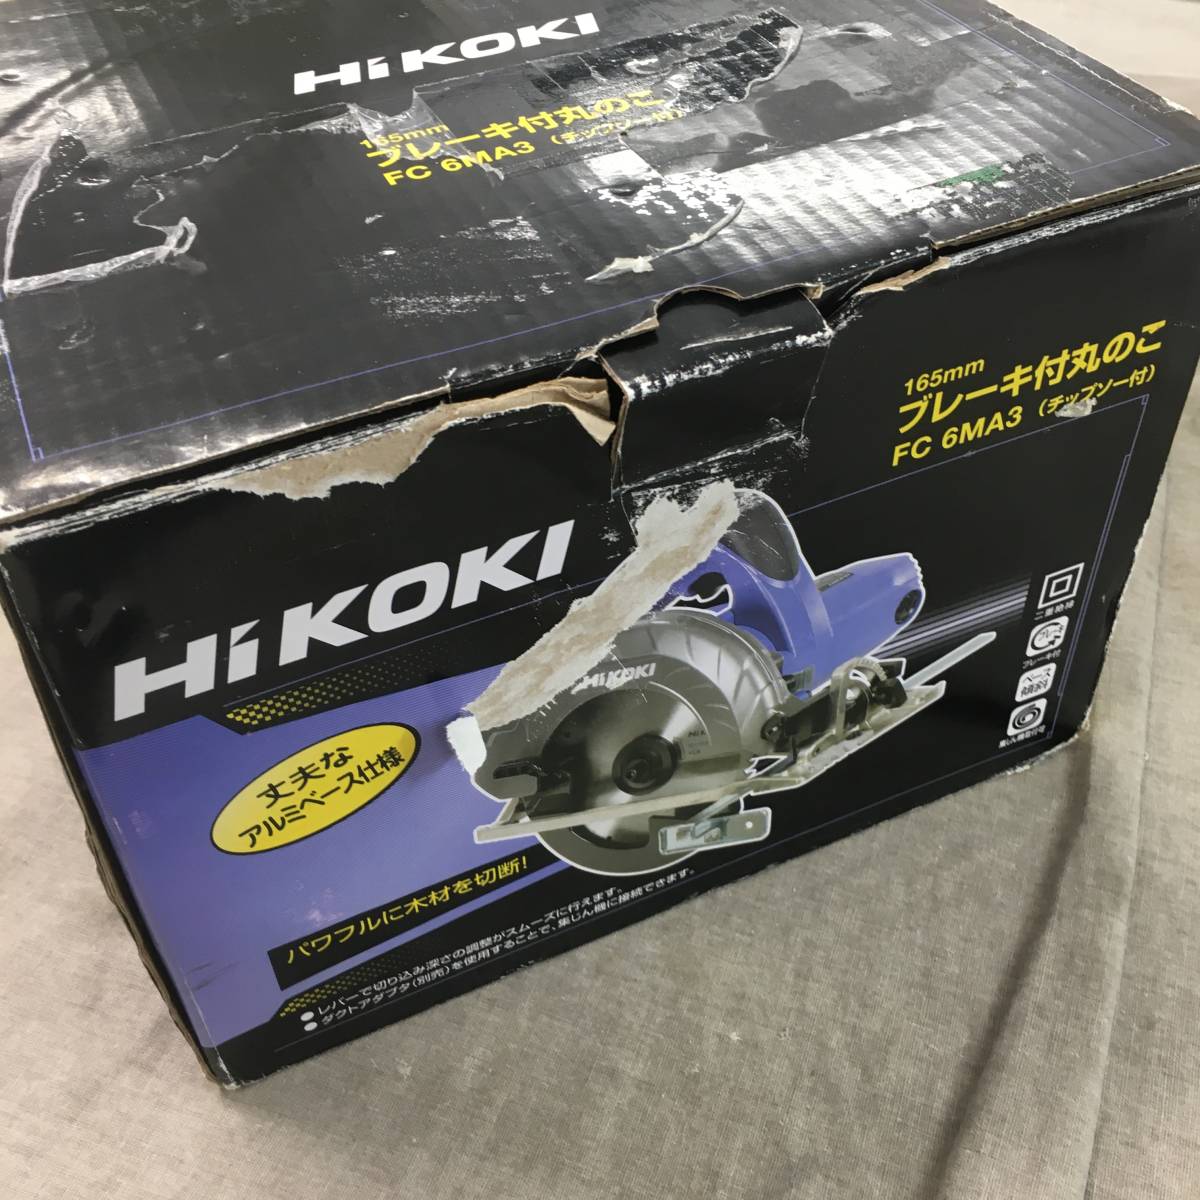 未使用品 HiKOKI(ハイコーキ) 旧 日立工機 AC100V 丸のこ のこ刃径165mm 最大切込み深さ57mm アルミベース仕様 FC6MA3_画像1